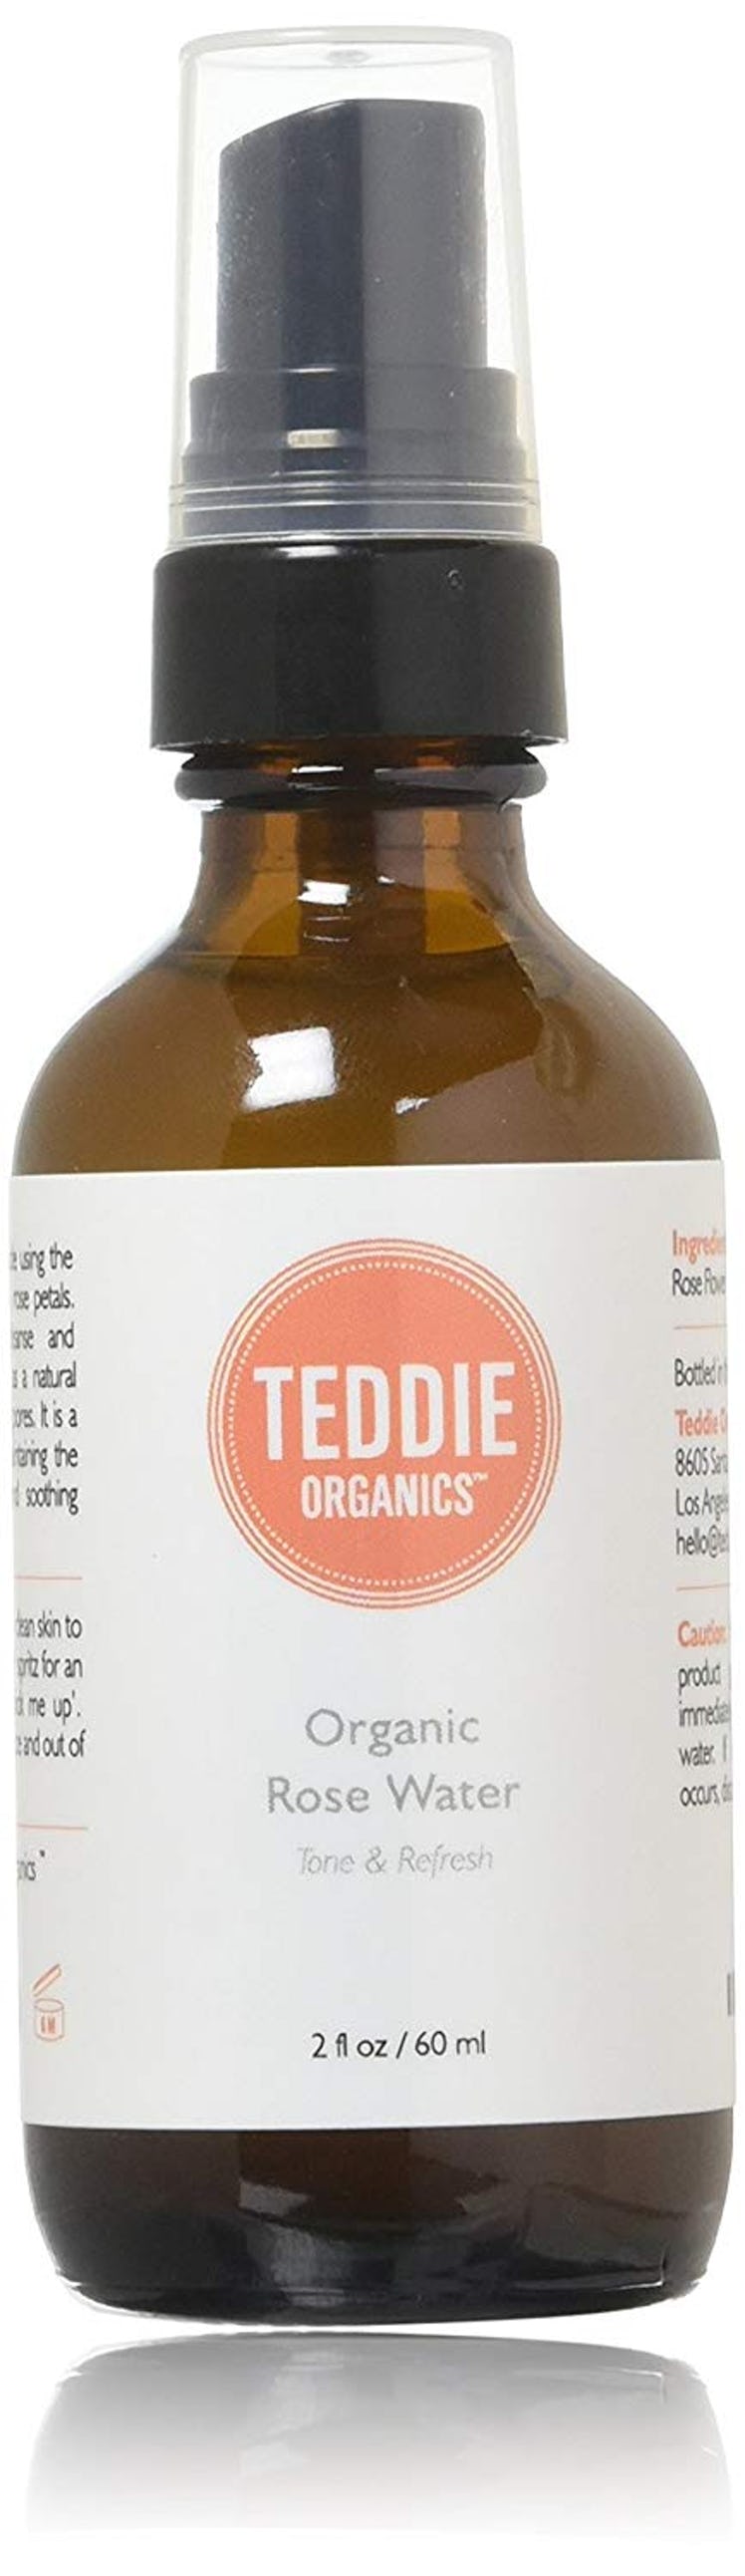 Teddie Organics